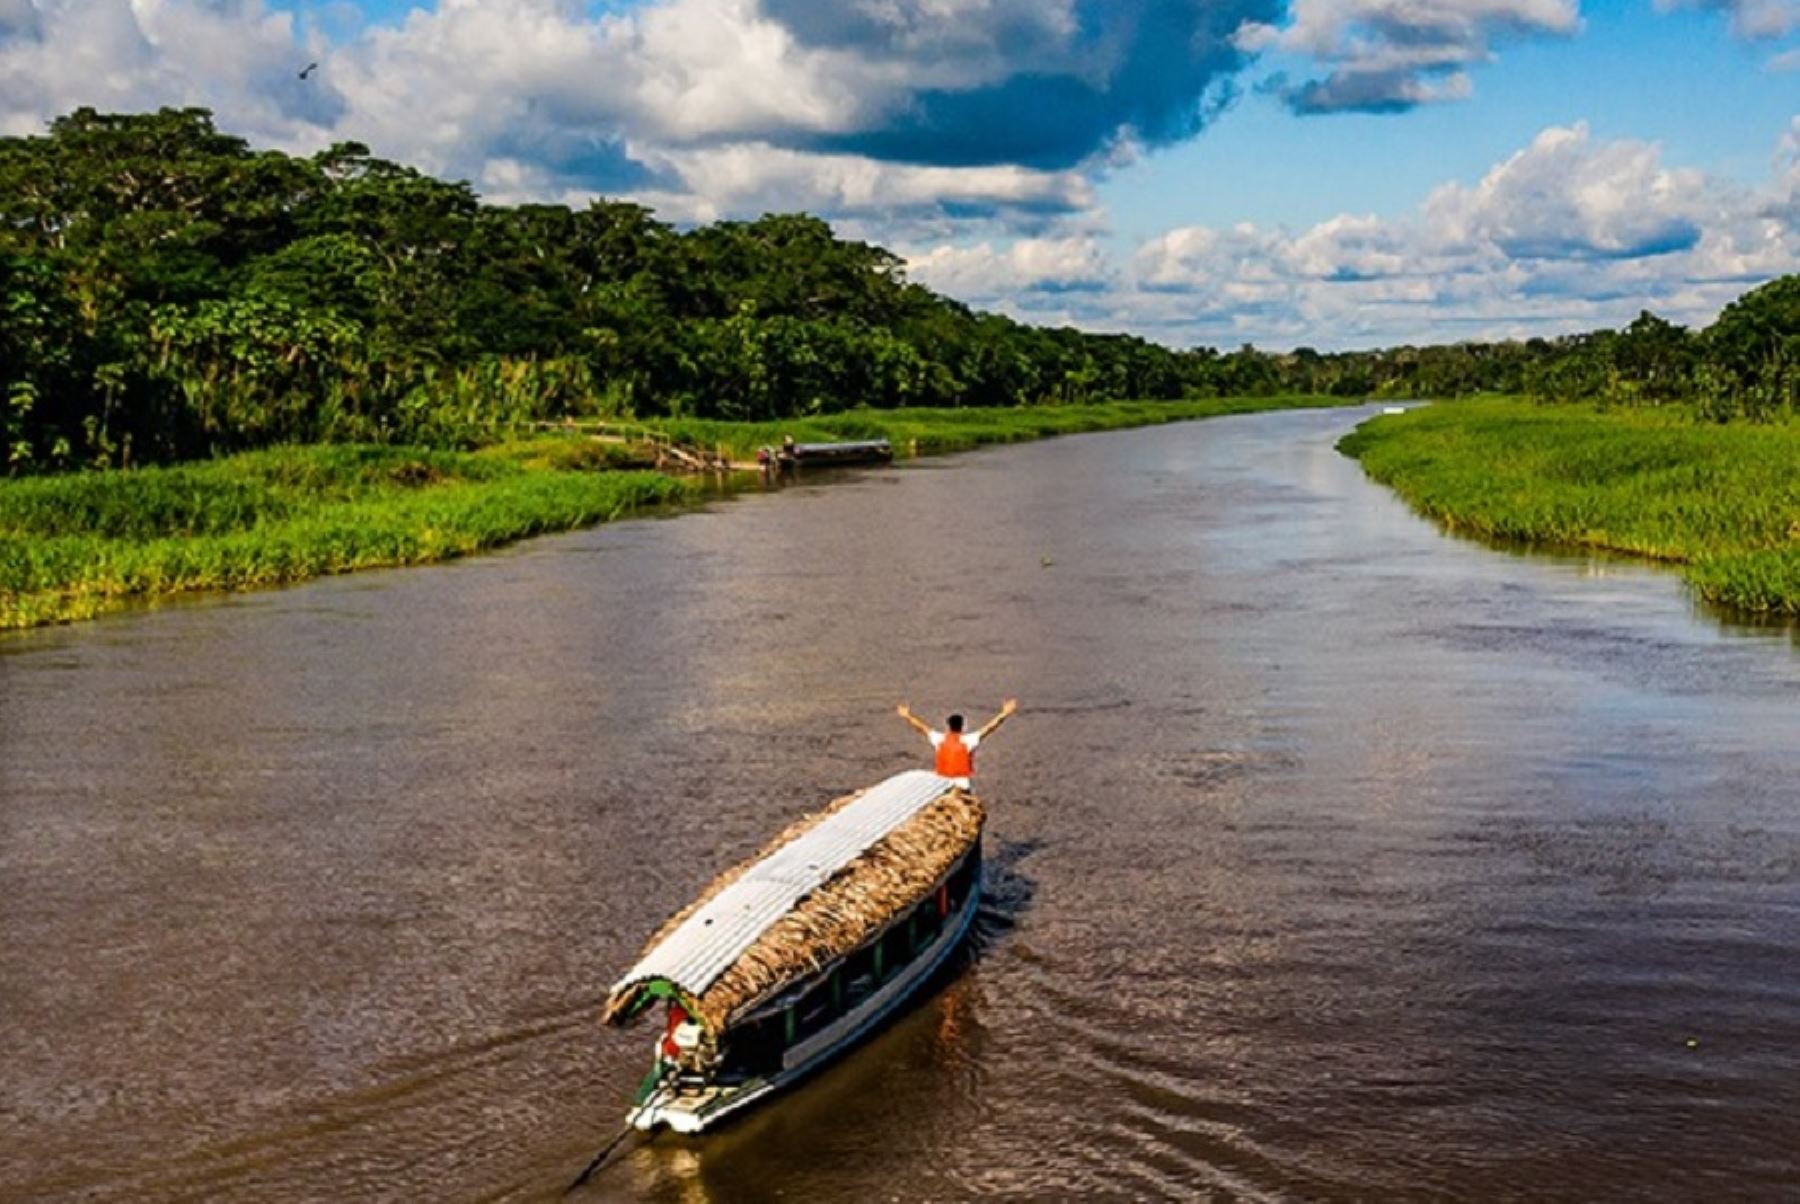 El río Amazonas es el estandarte turístico de la región Loreto y cumple una enorme importancia ecológica. Foto: INTERNET/Medios